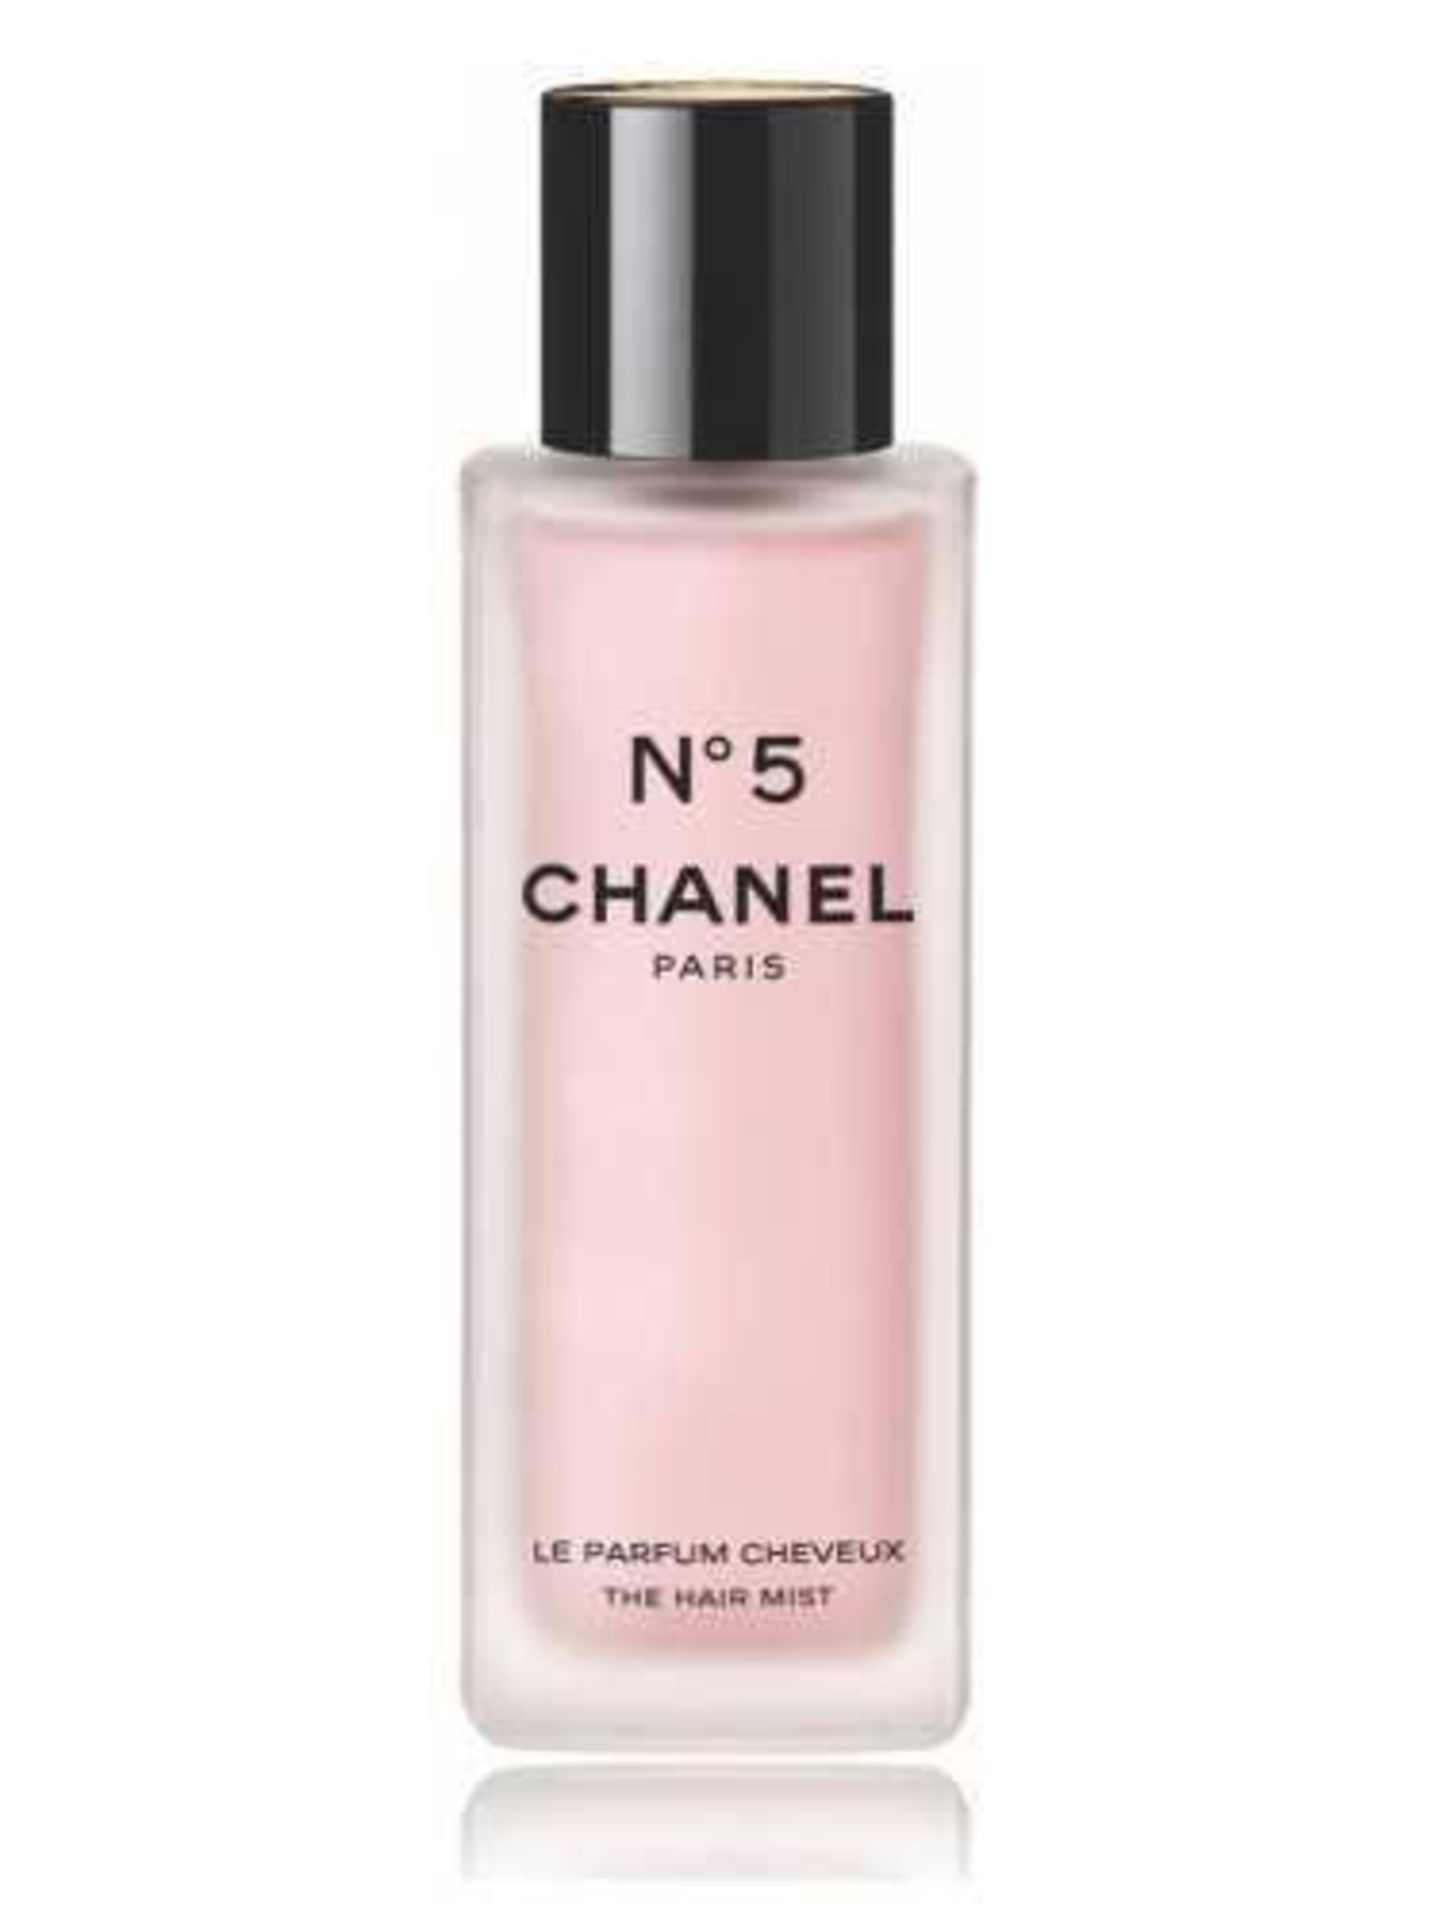 RRP £60 Bottle Of Chanel No5 Paris Le Parfum Cheveux The Hair Mist (Ex Display) (Appraisals